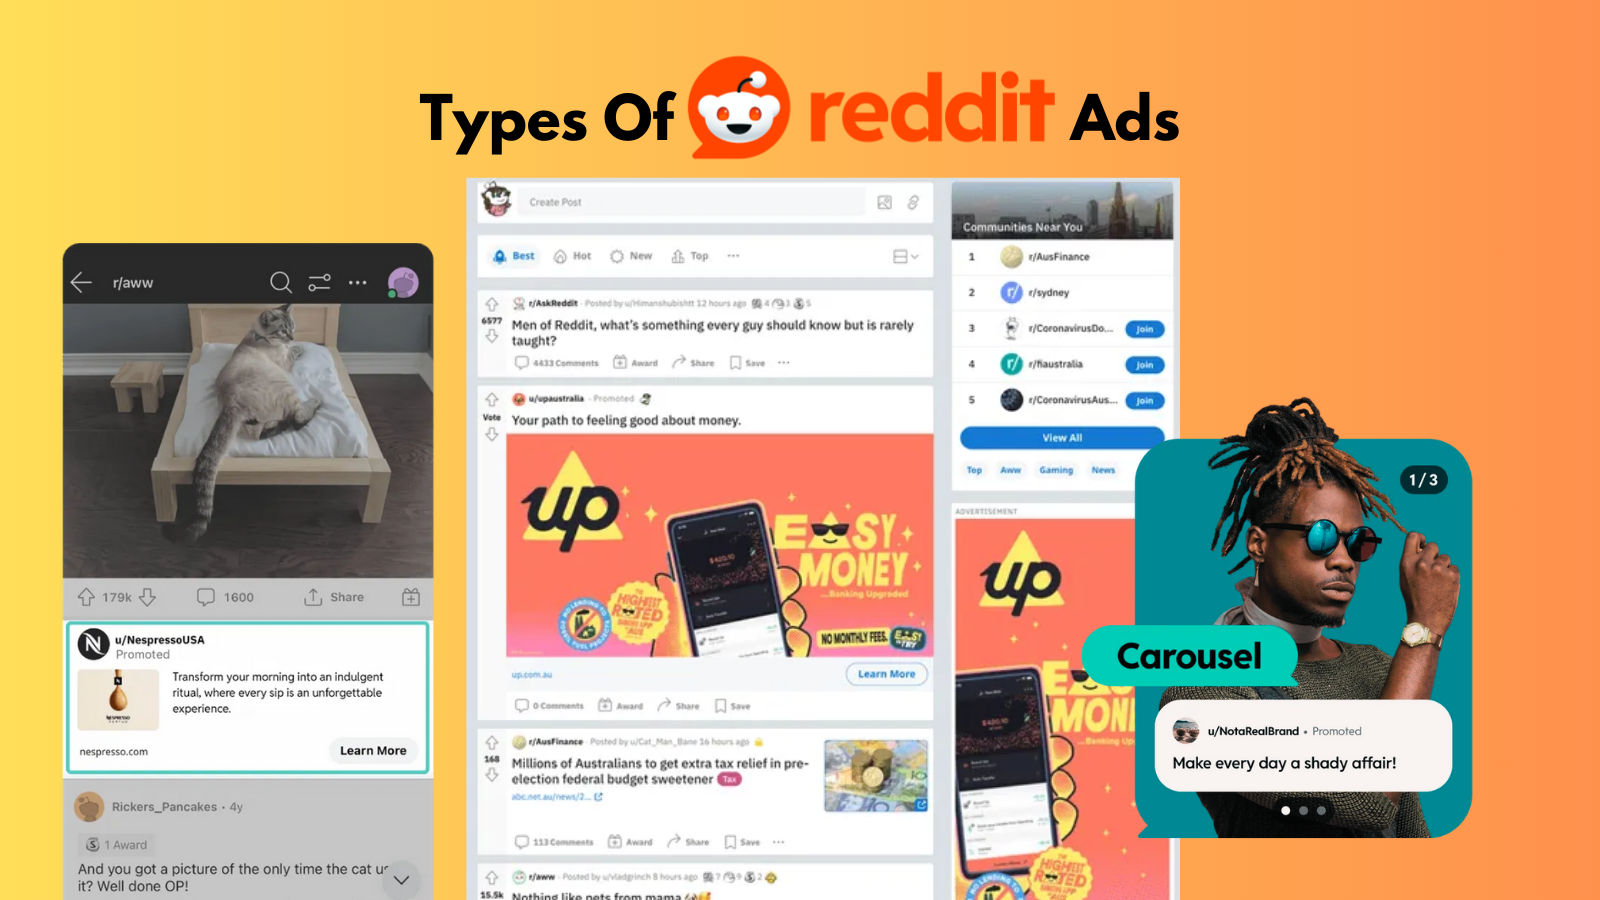 spy-reddit-types-of-ads